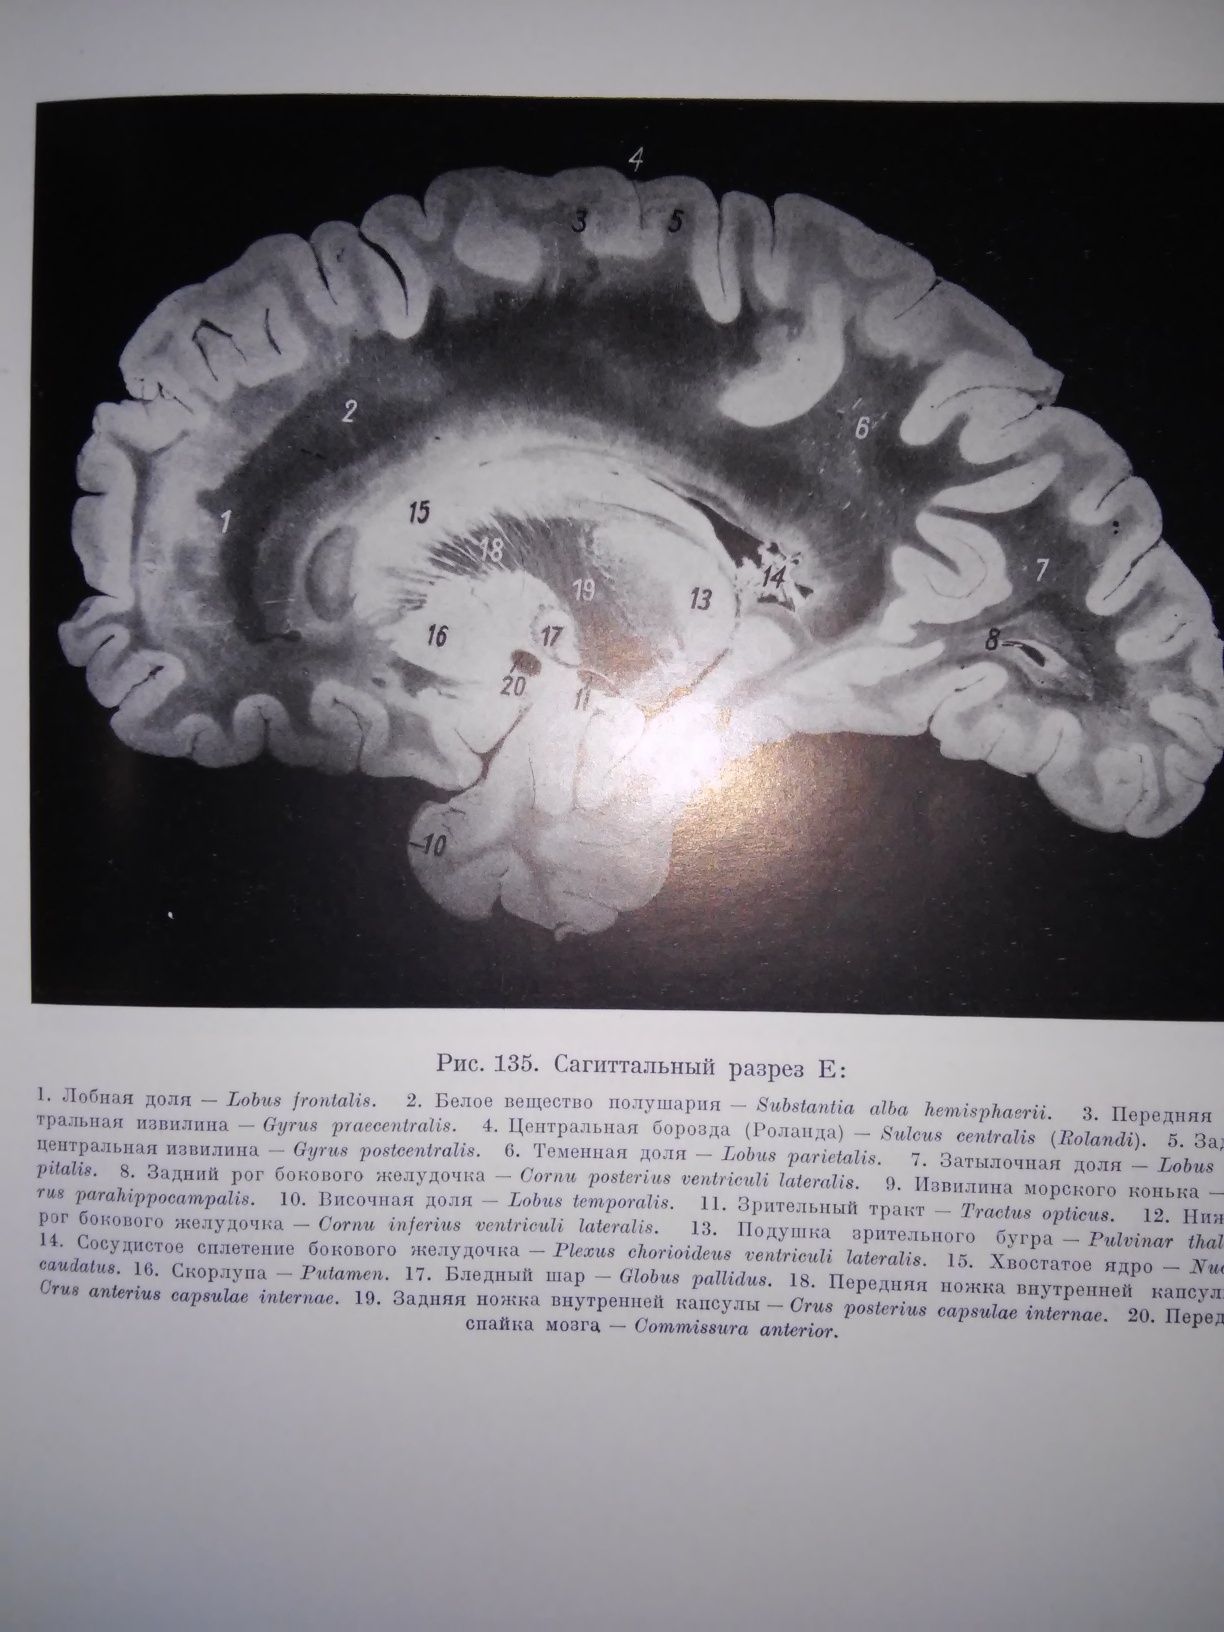 Стэльмасяк Анатомический атлас головного спинного мозга 1956 р.